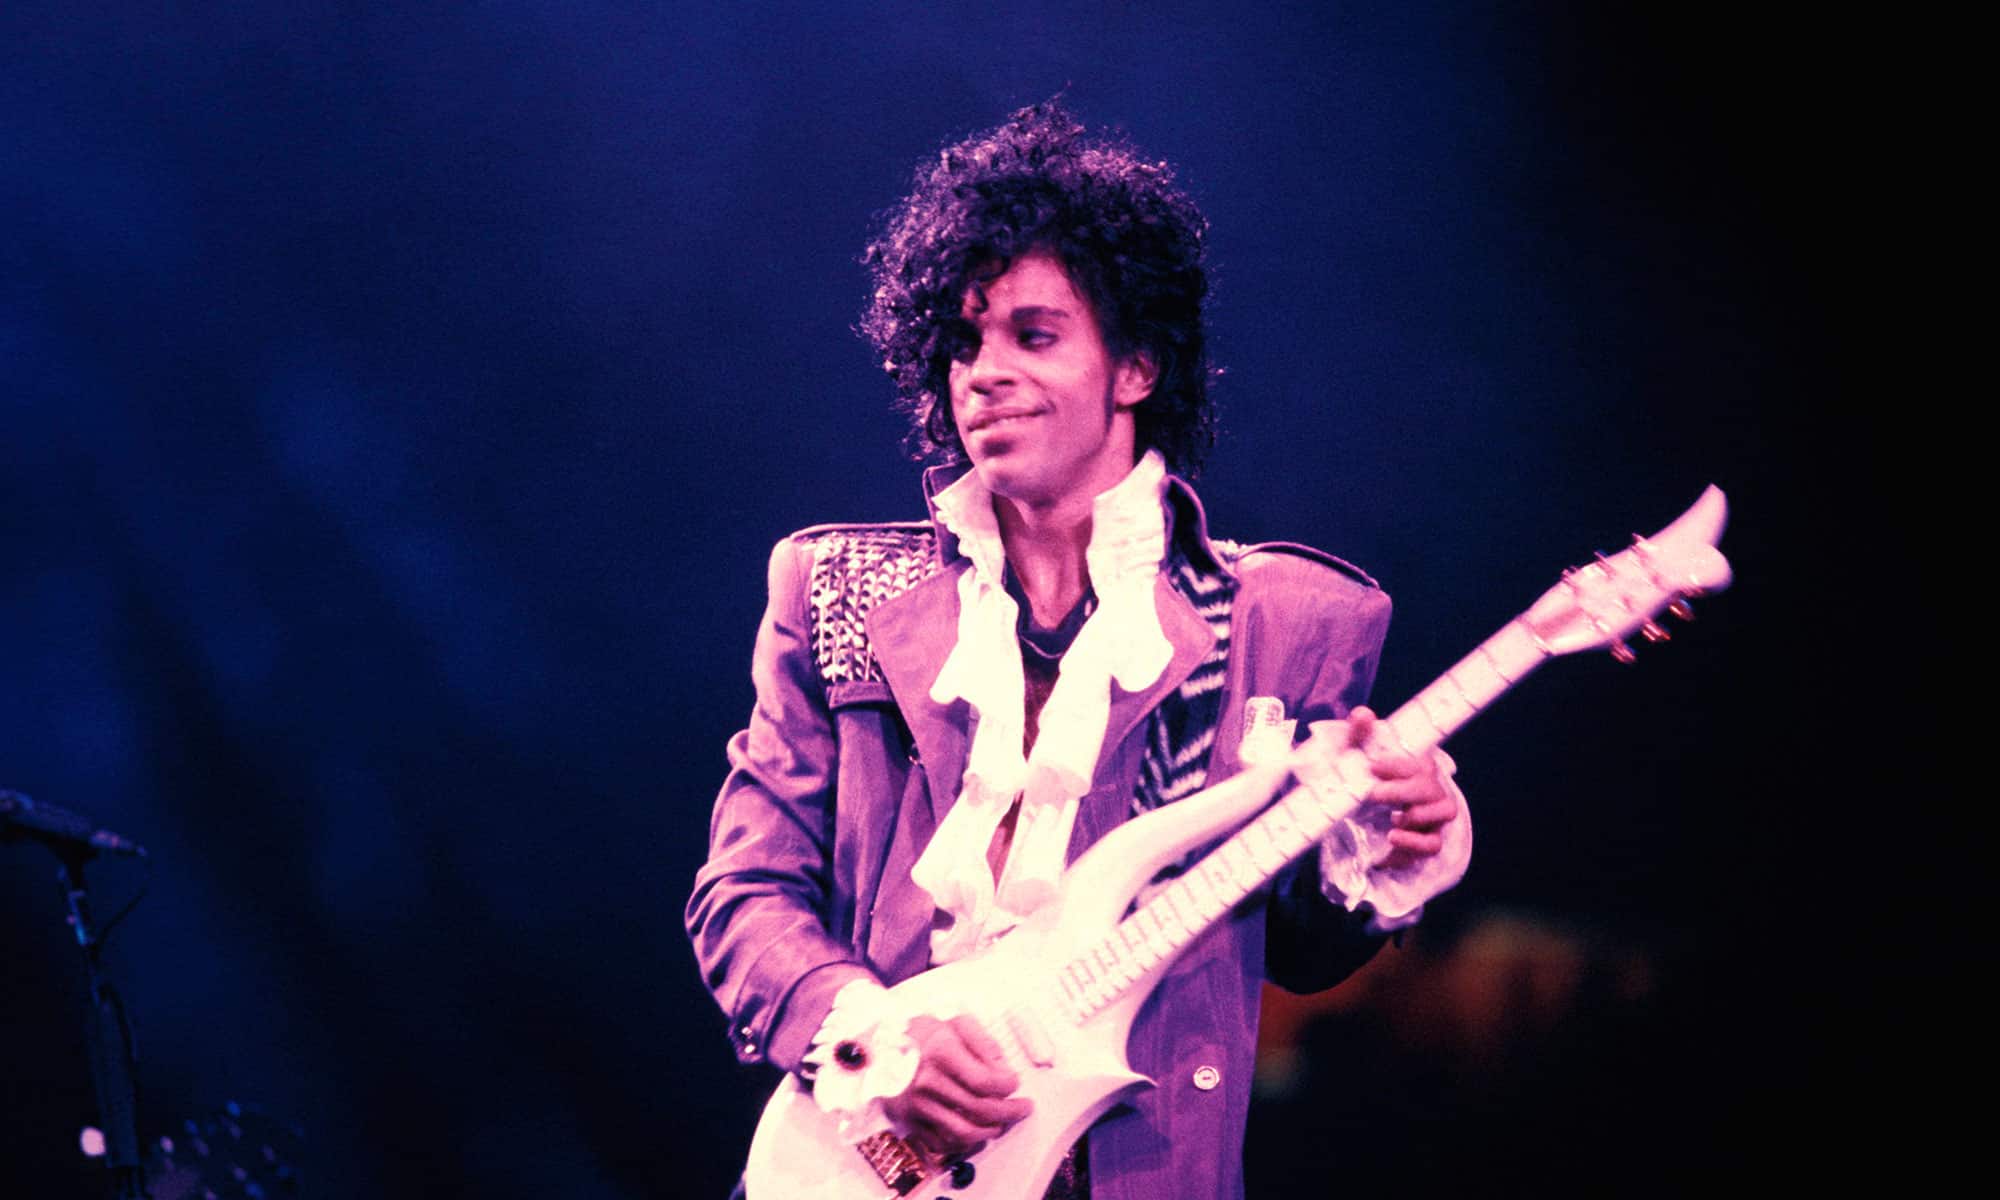 A los 57 años fallece el reconocido músico Prince. Tuvo una especial relación con Toronto